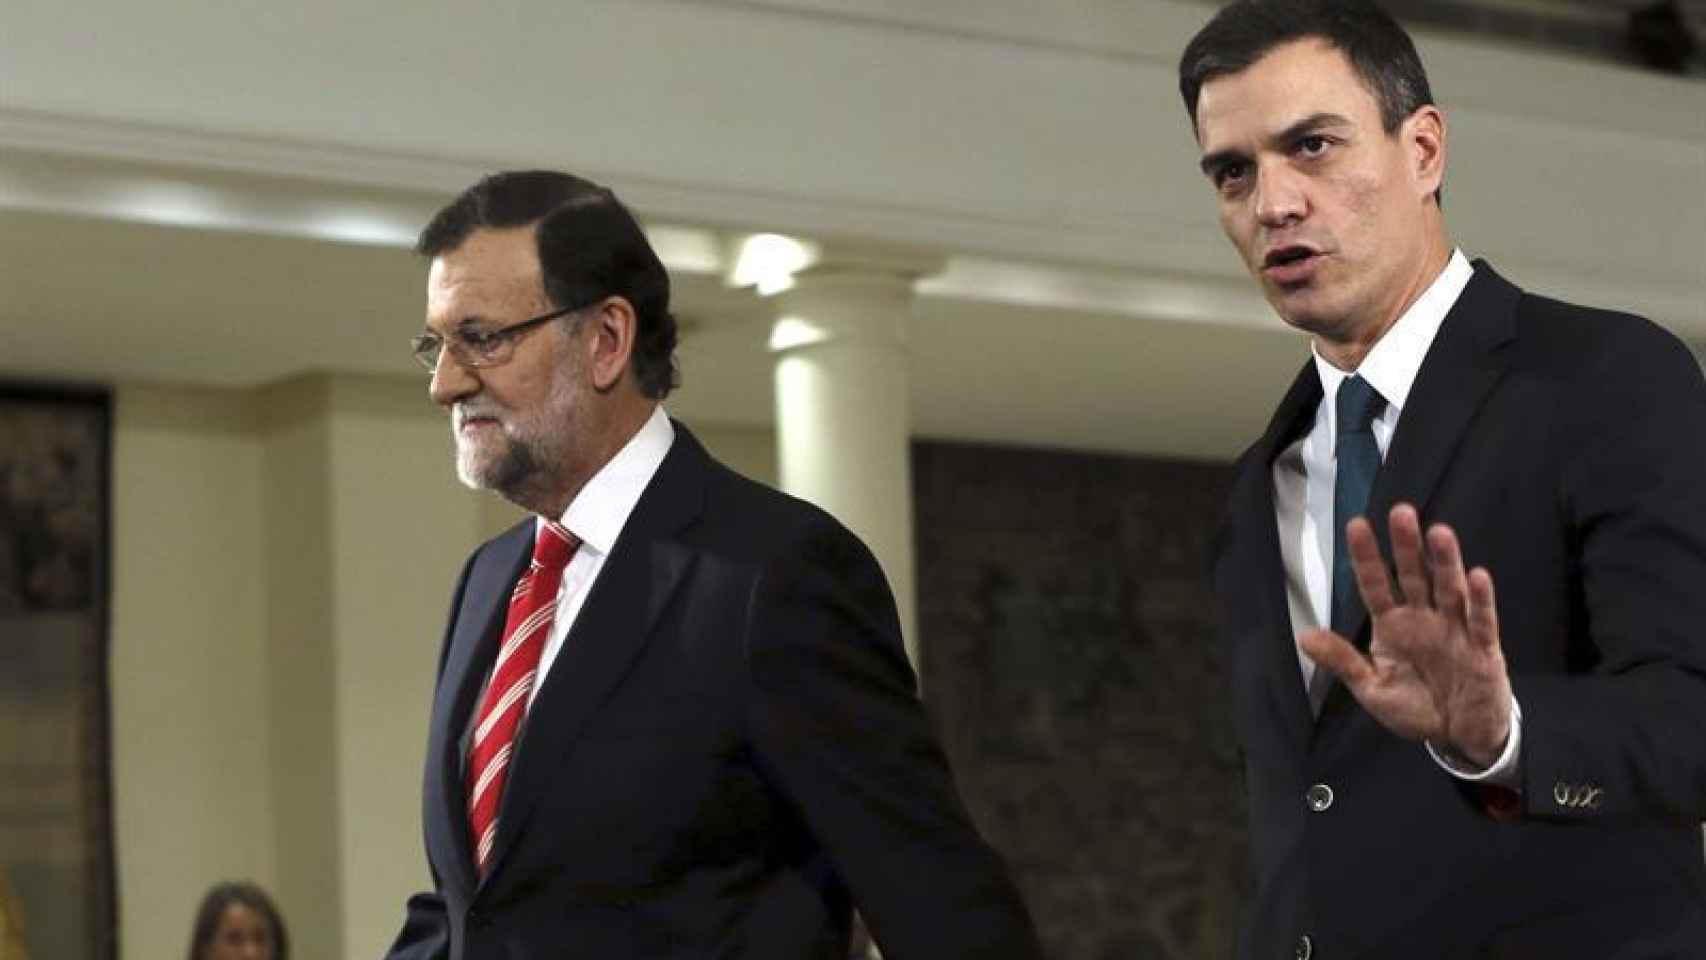 El presidente del Gobierno, Mariano Rajoy, con el líder socialista, Pedro Sánchez, en imagen de archivo.